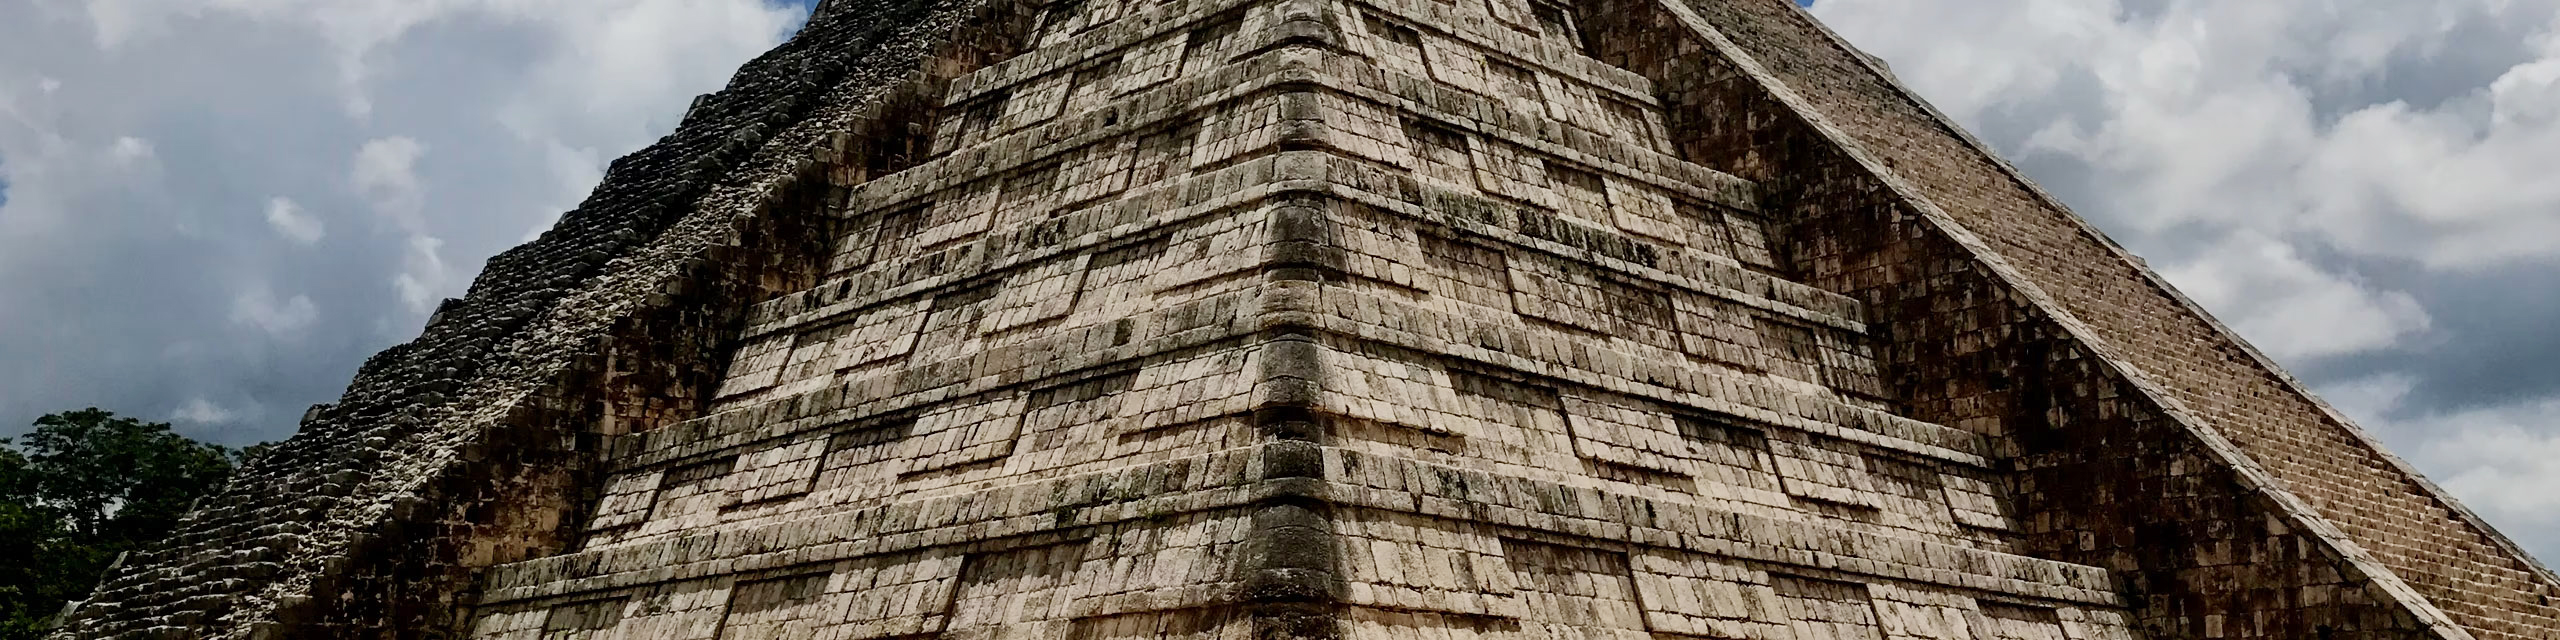 Inca ruins in Mexico.